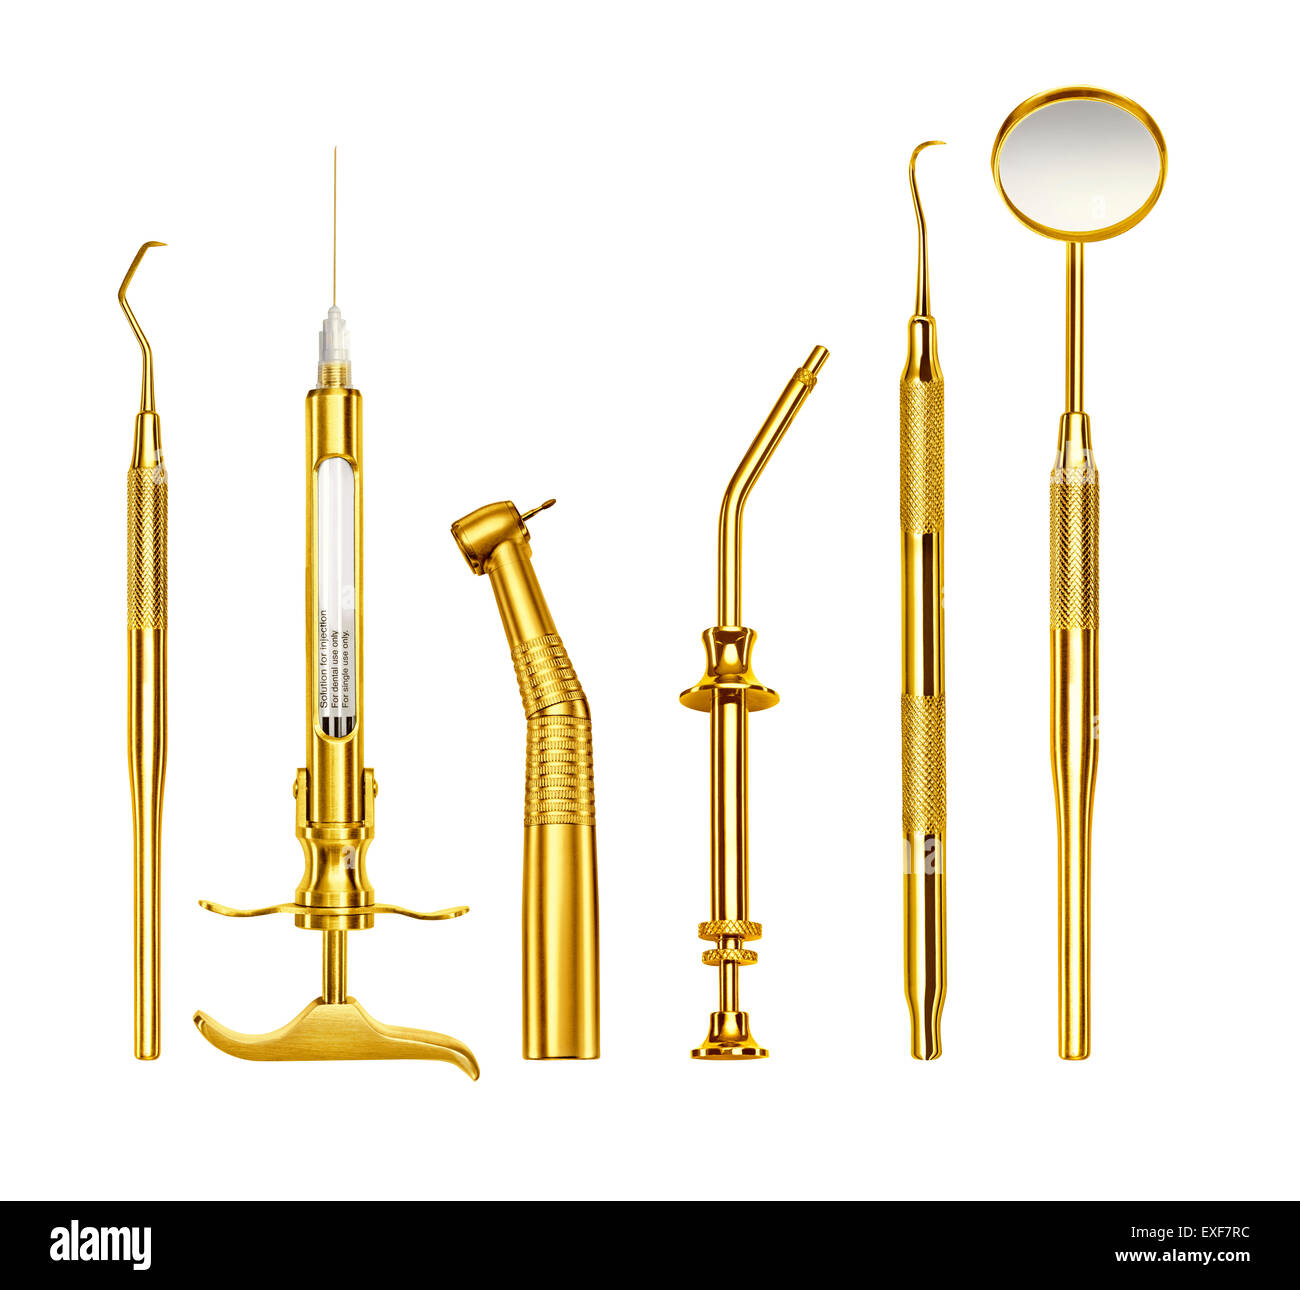 Une rangée d'outils de dentiste d'or Banque D'Images